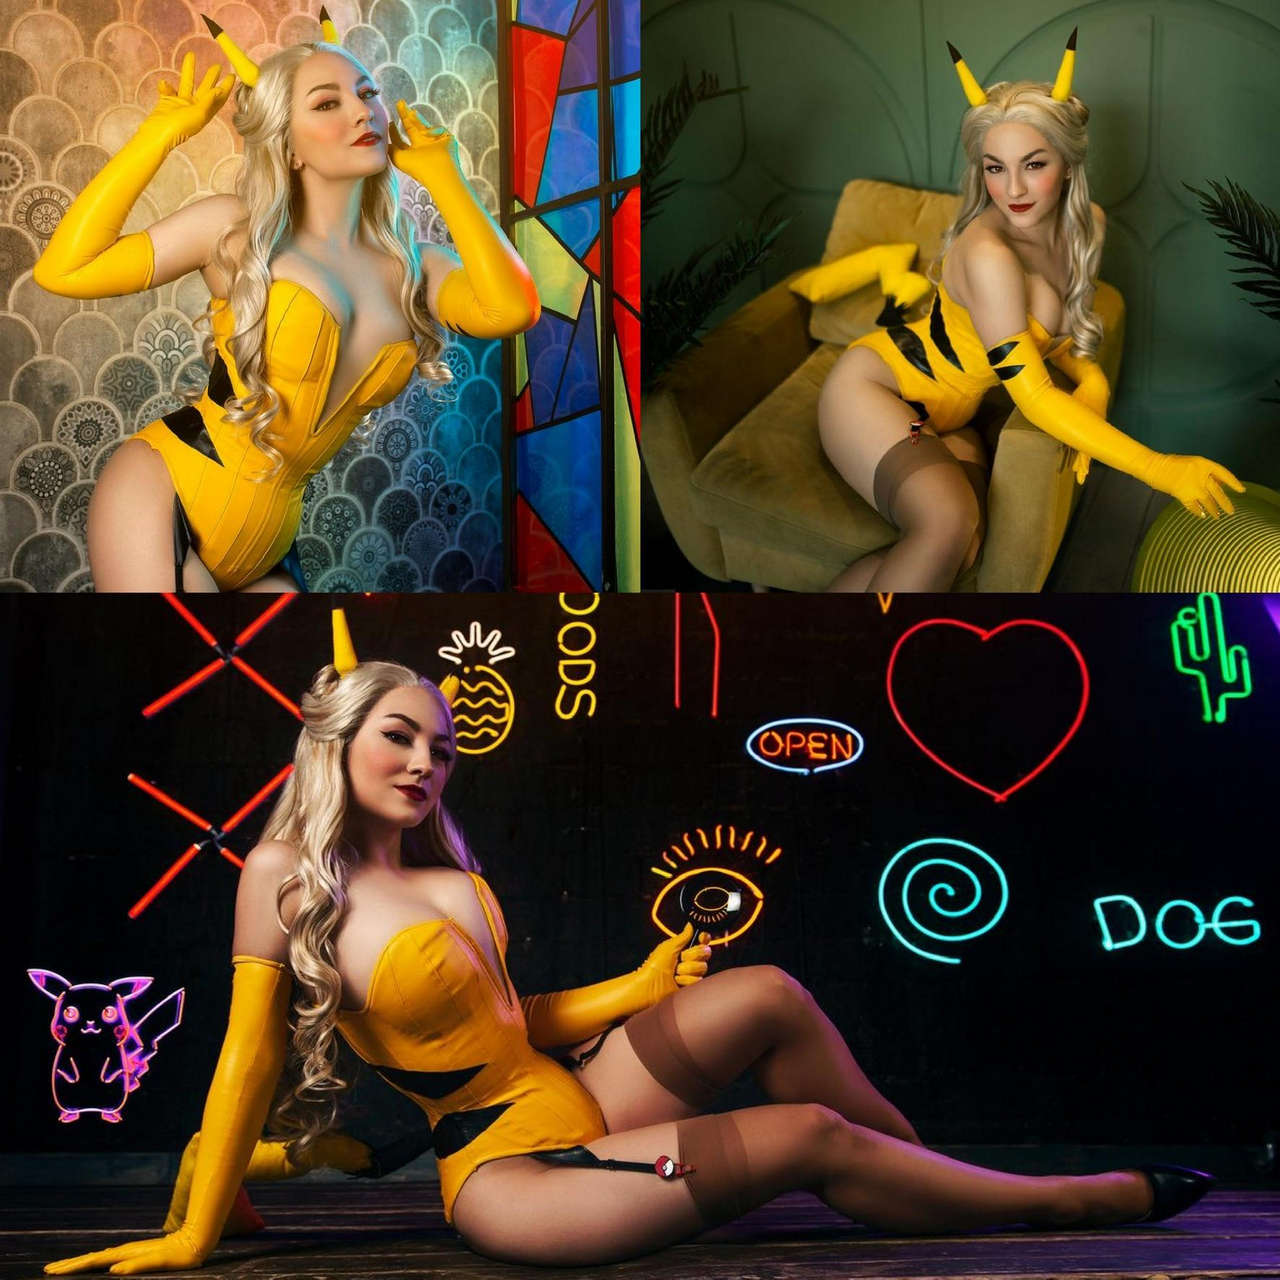 Pikachu By Zoe Vol